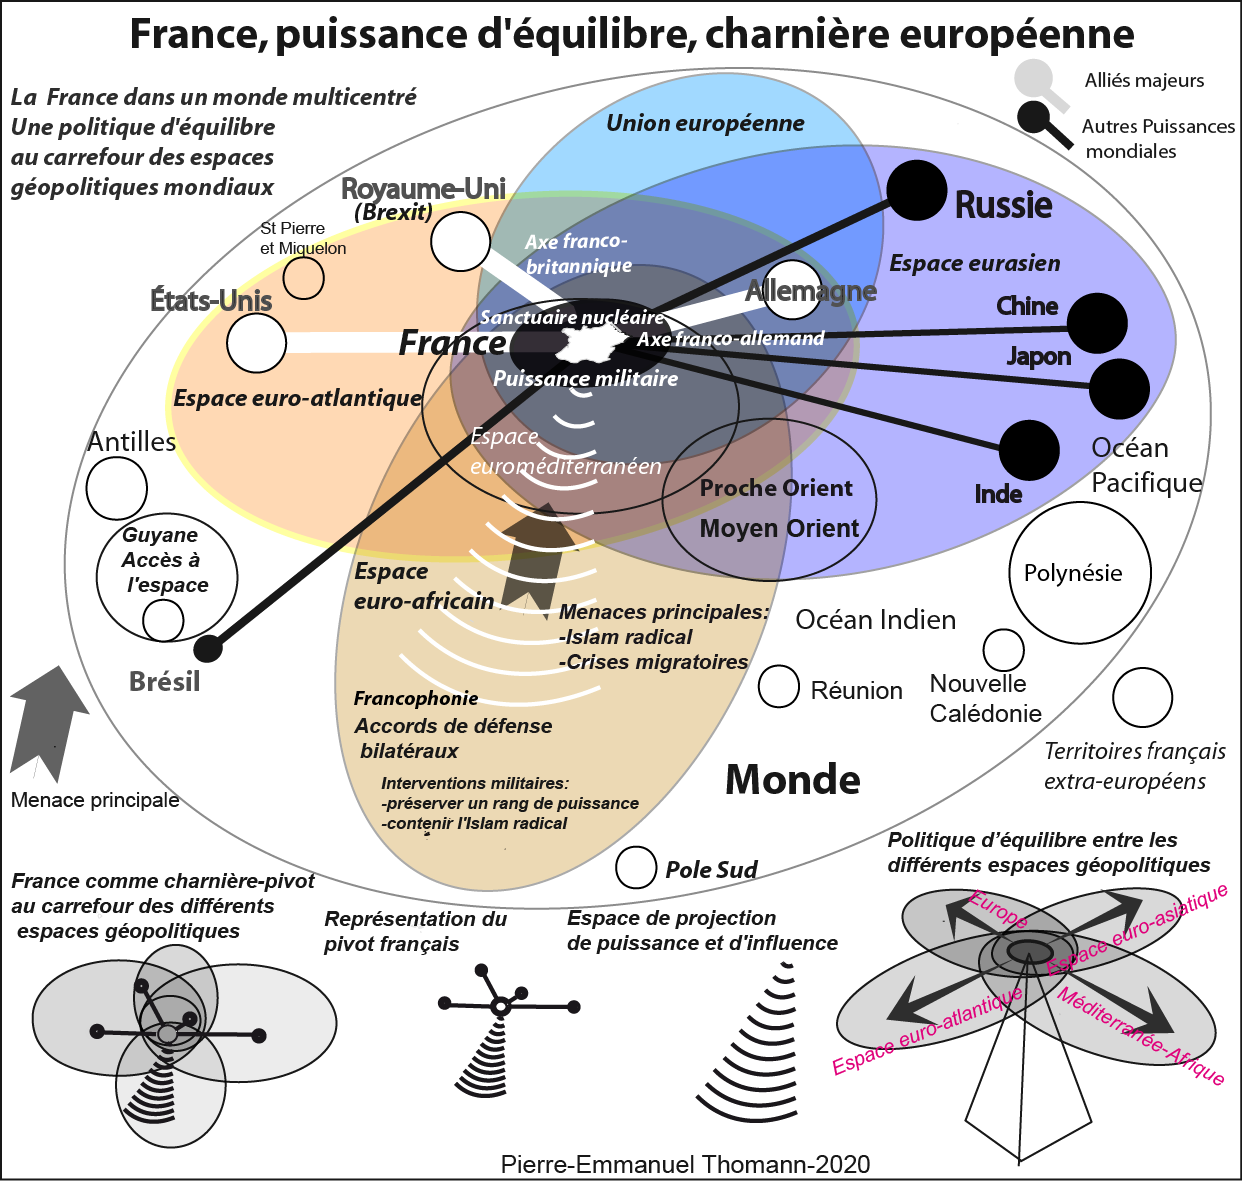 Le monde post-coronavirus – Géopolitique de la France dans la nouvelle rivalité des puissances